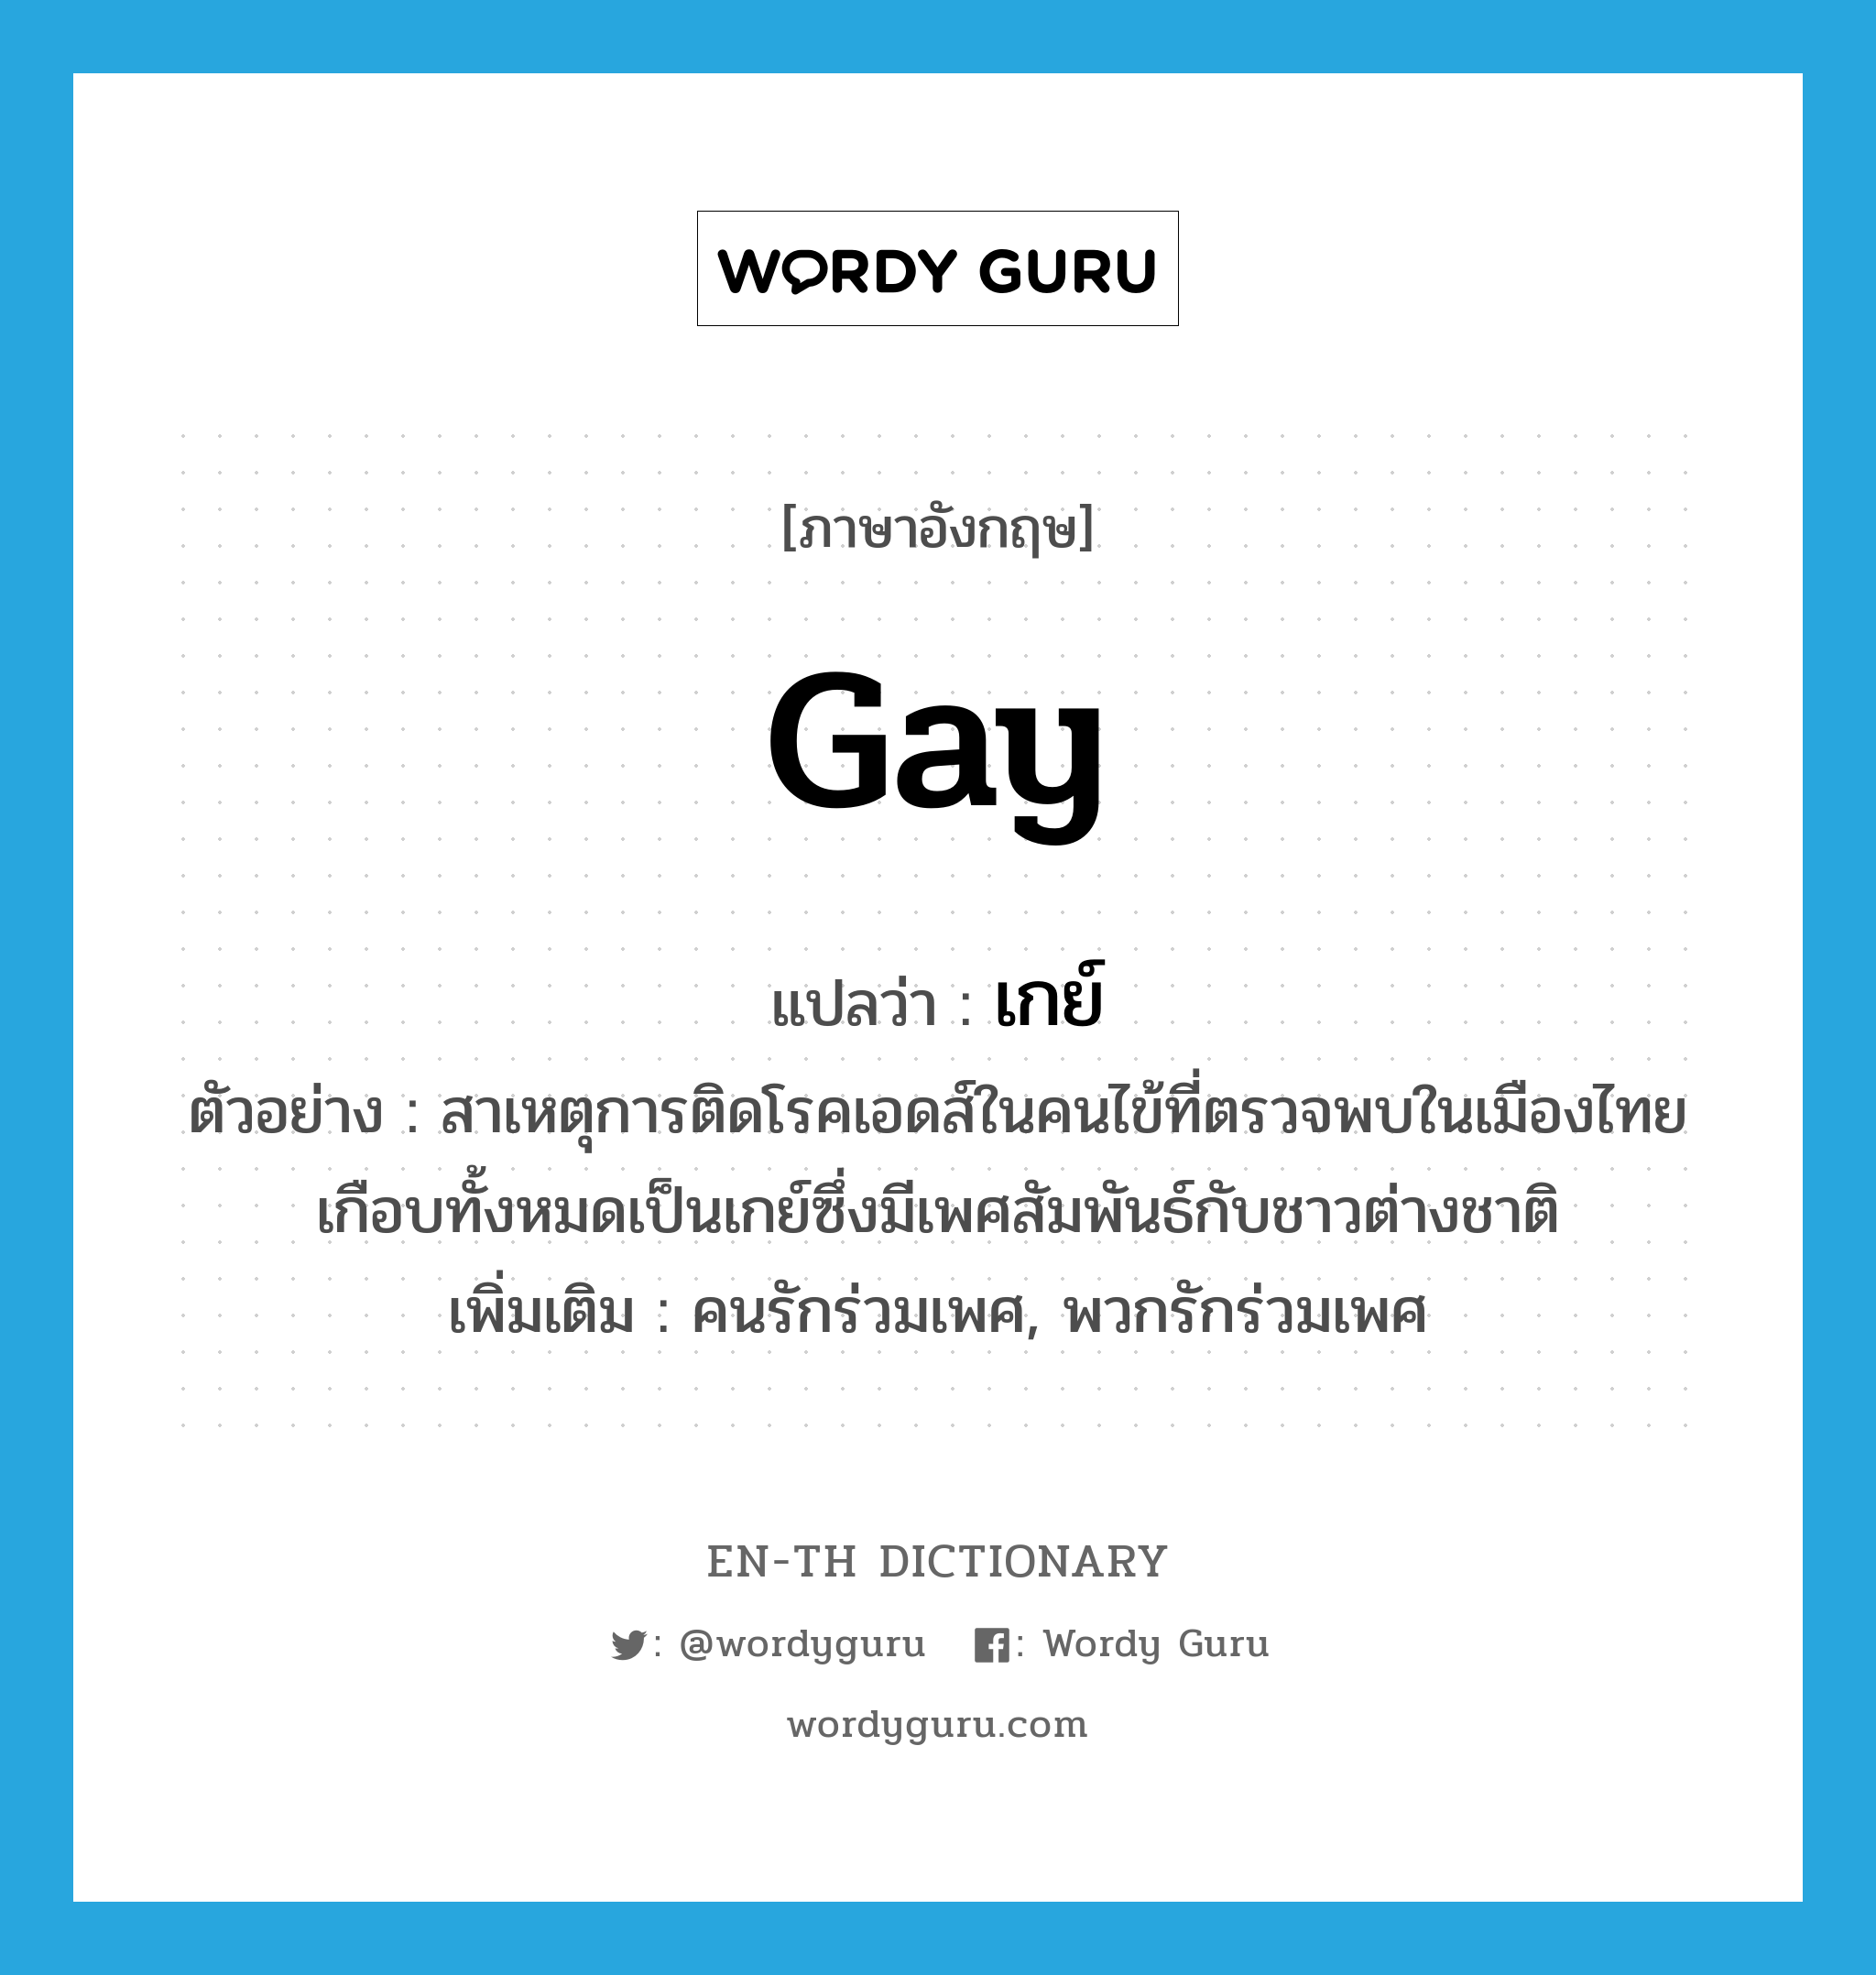 gay แปลว่า?, คำศัพท์ภาษาอังกฤษ gay แปลว่า เกย์ ประเภท N ตัวอย่าง สาเหตุการติดโรคเอดส์ในคนไข้ที่ตรวจพบในเมืองไทย เกือบทั้งหมดเป็นเกย์ซึ่งมีเพศสัมพันธ์กับชาวต่างชาติ เพิ่มเติม คนรักร่วมเพศ, พวกรักร่วมเพศ หมวด N